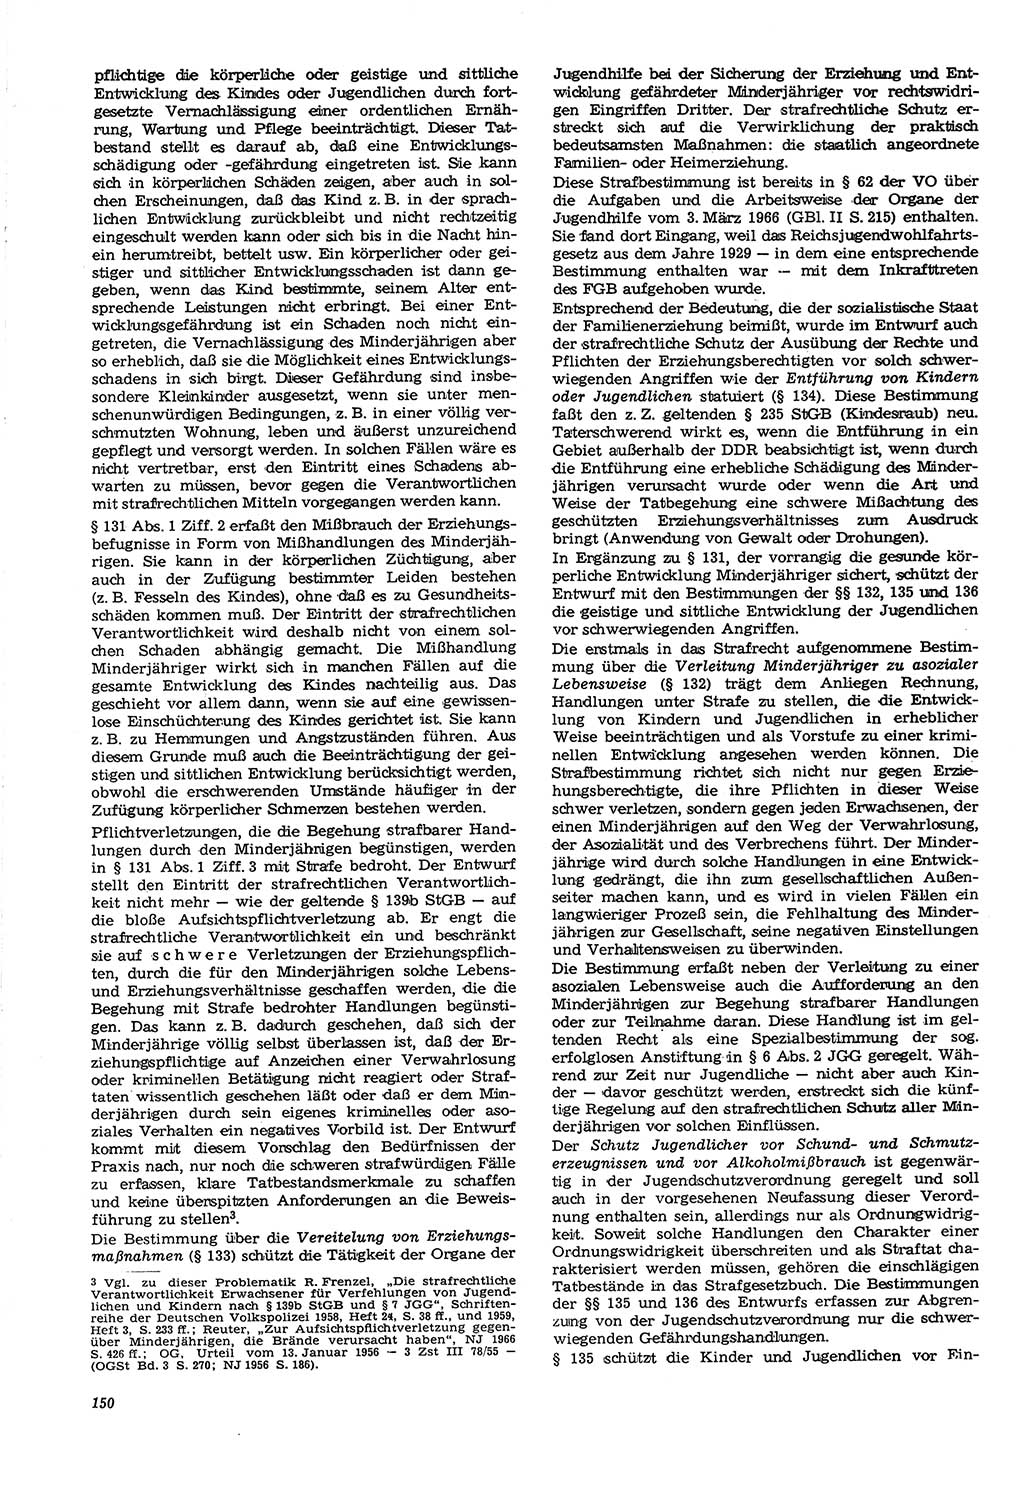 Neue Justiz (NJ), Zeitschrift für Recht und Rechtswissenschaft [Deutsche Demokratische Republik (DDR)], 21. Jahrgang 1967, Seite 150 (NJ DDR 1967, S. 150)